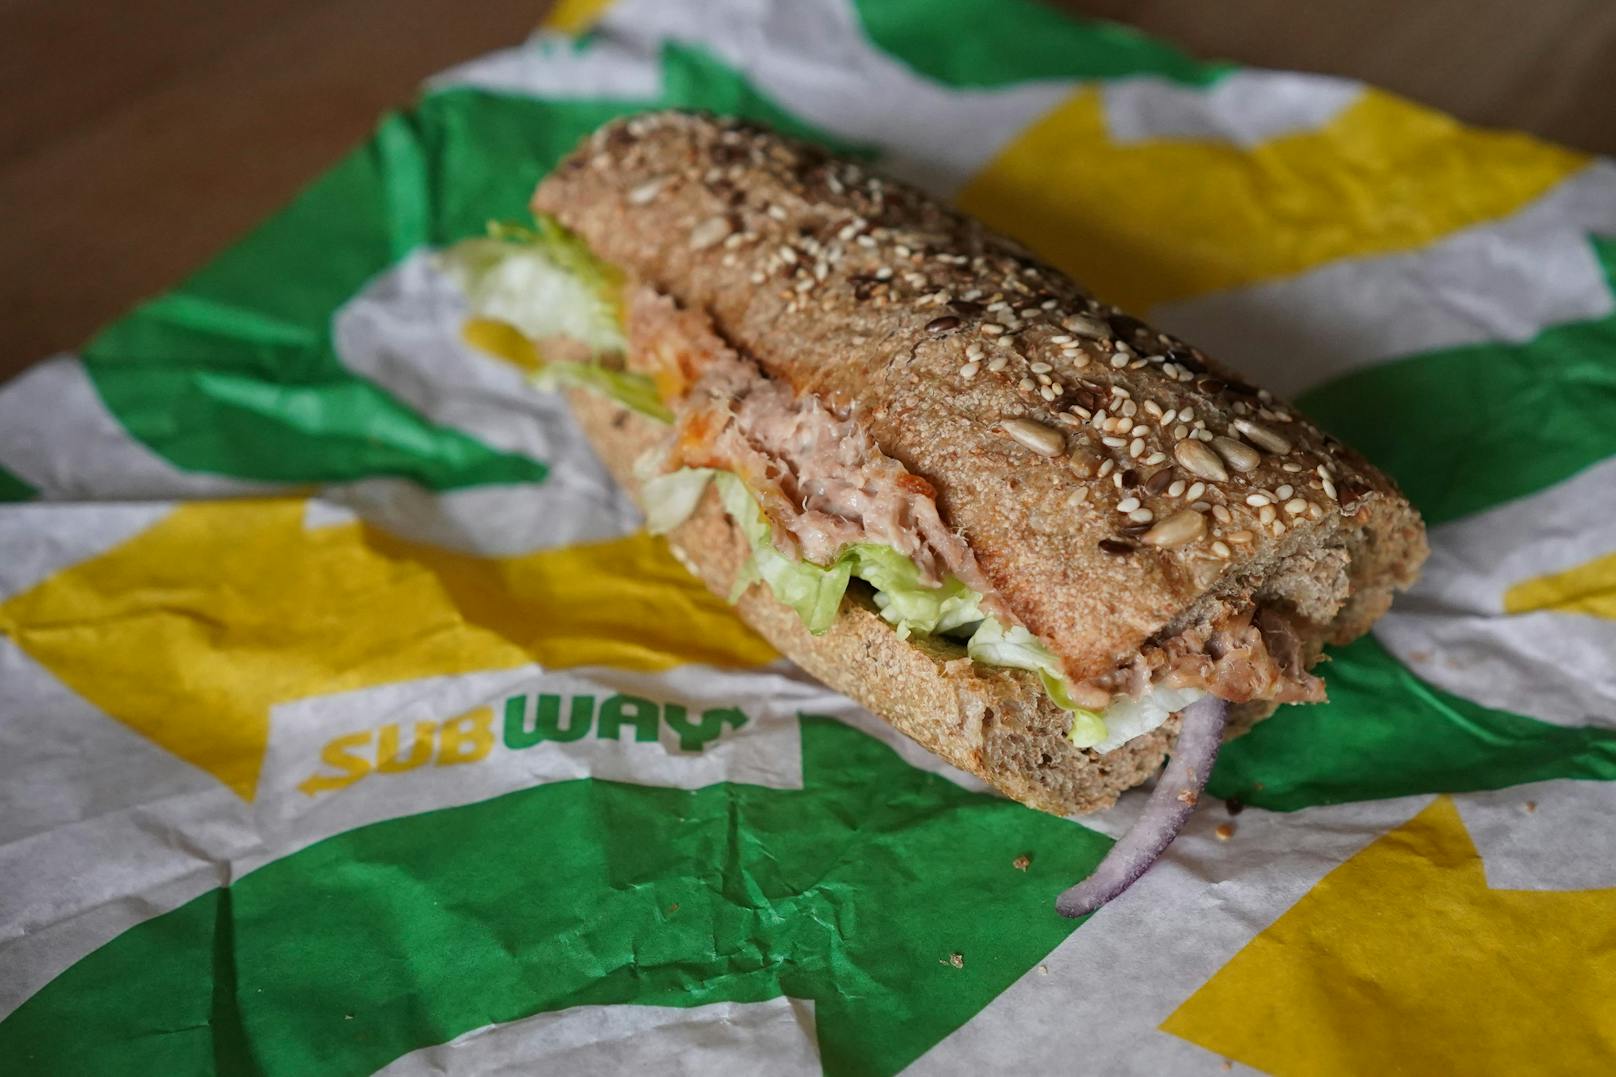 Kein Thunfisch im "Tuna Sandwich" - Klage gegen Subway